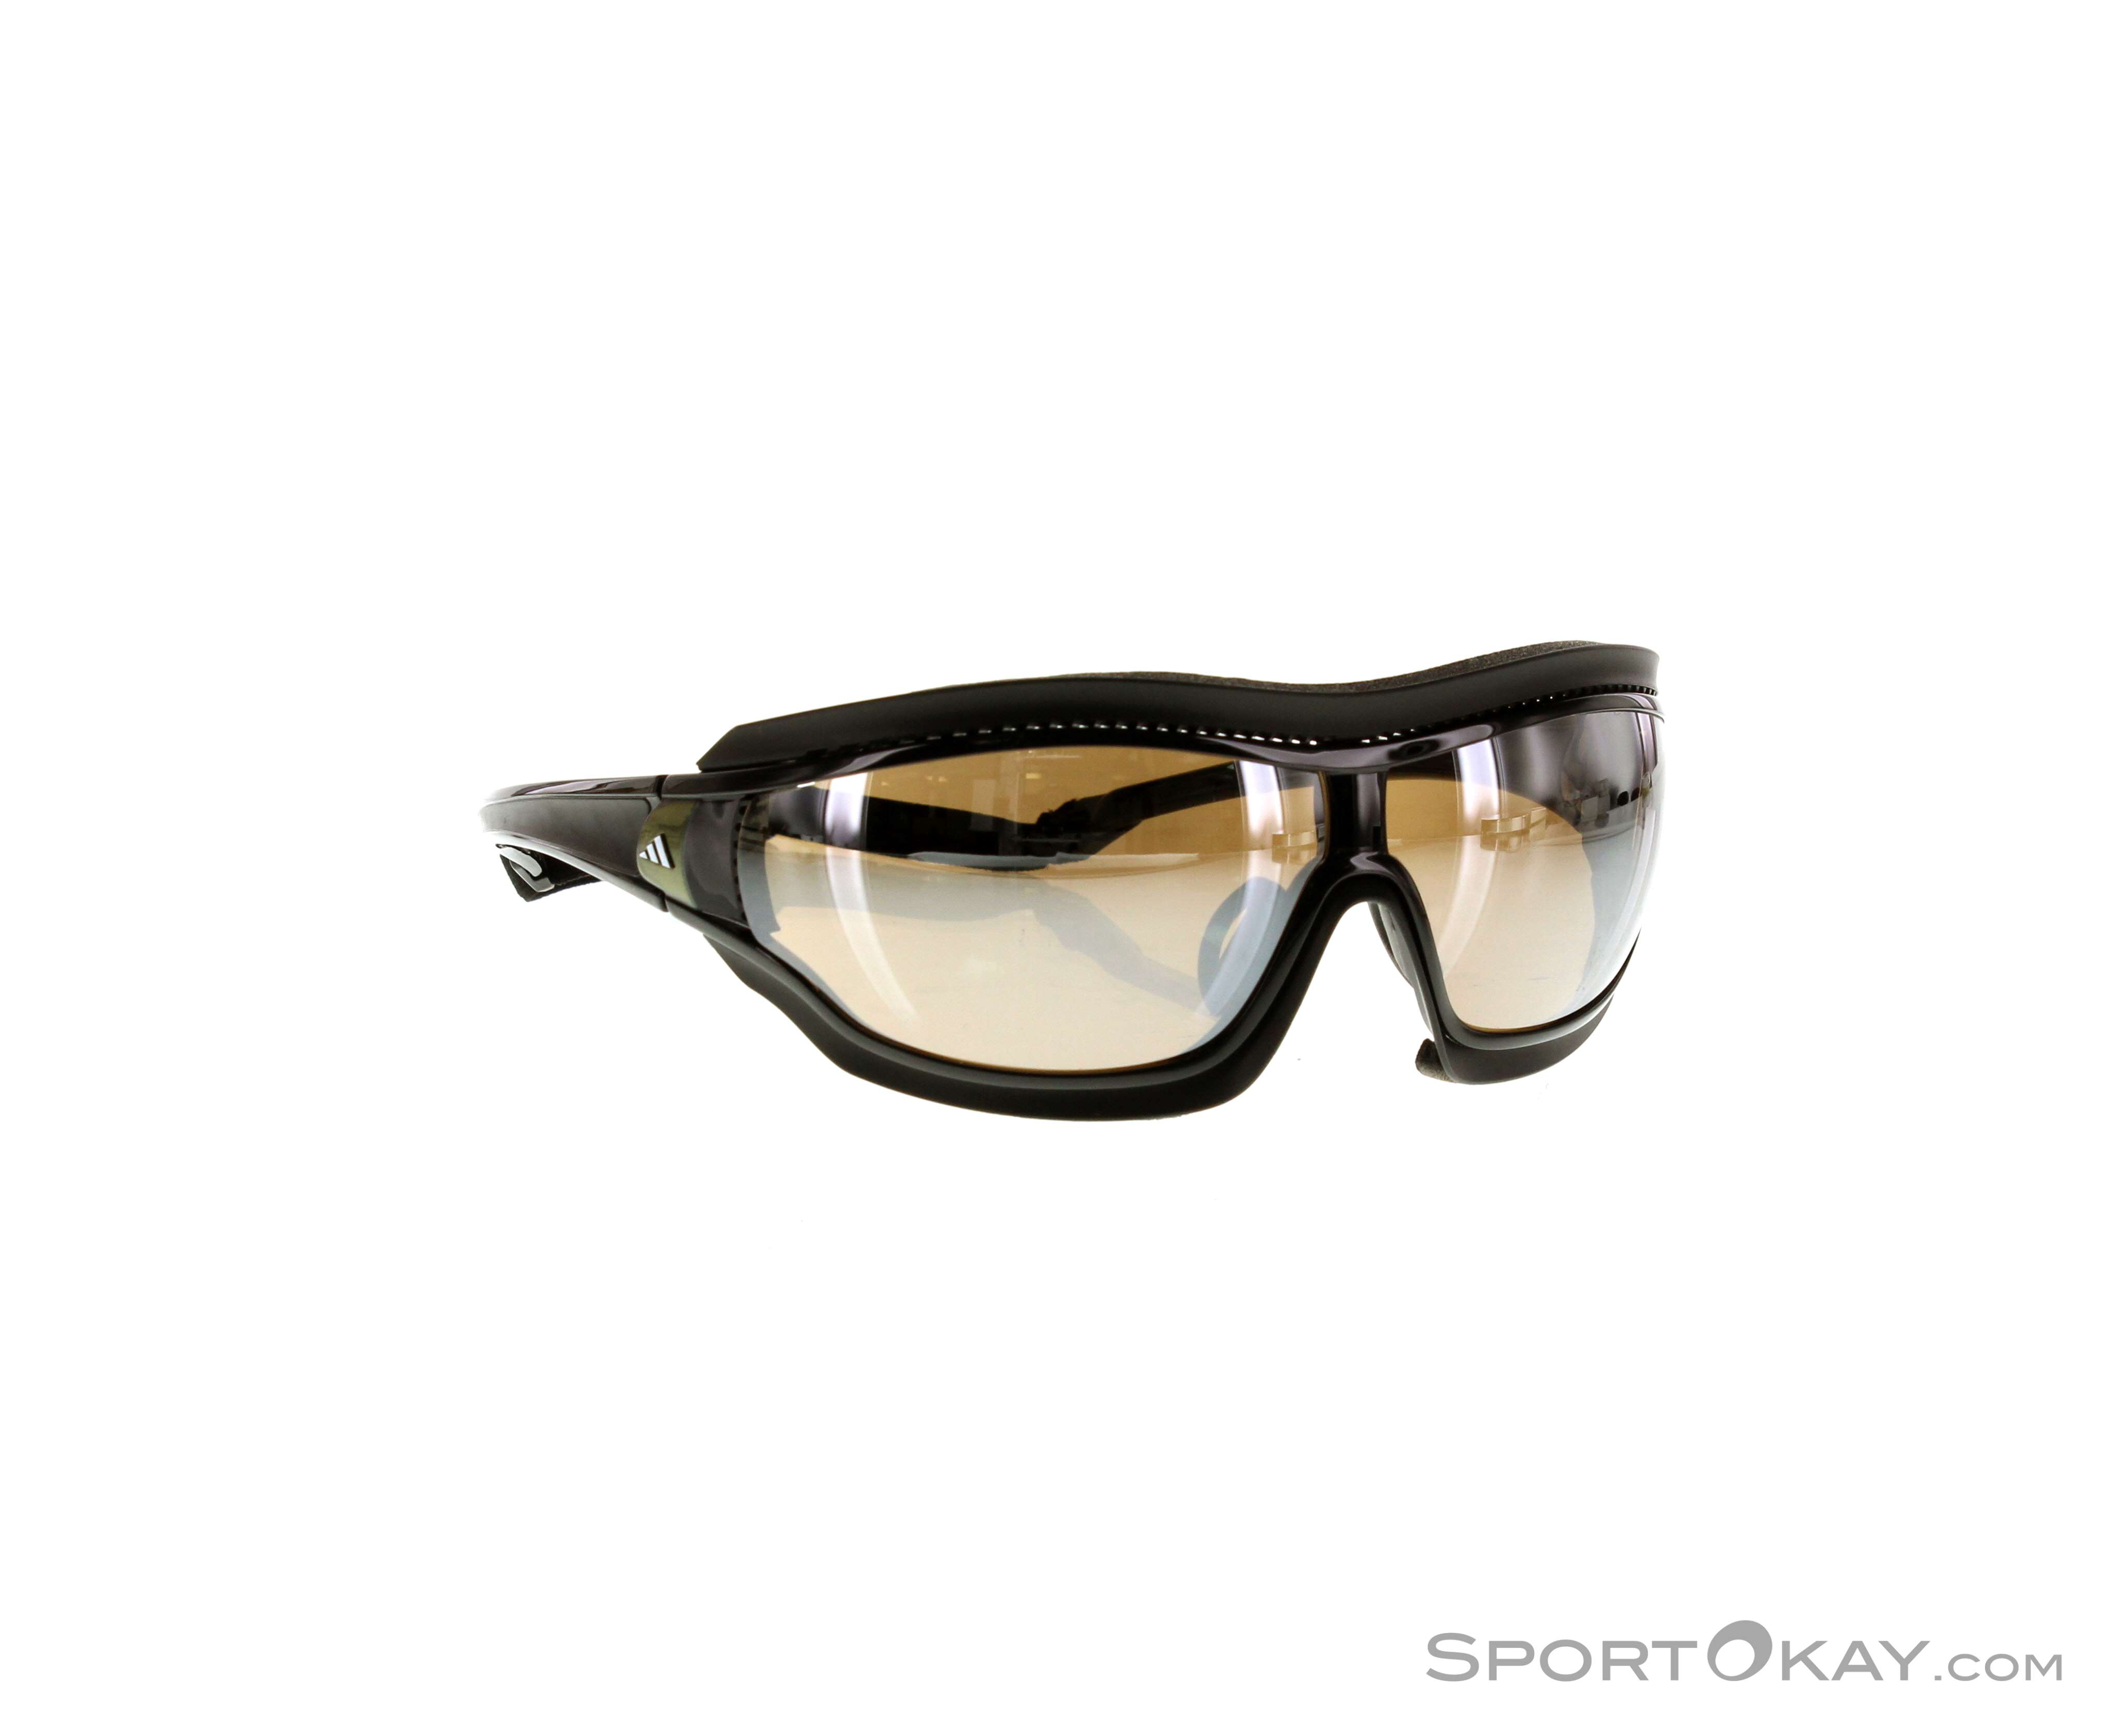 Adidas Tycane Pro Sonnenbrille - - Sonnenbrillen - Fashion Alle